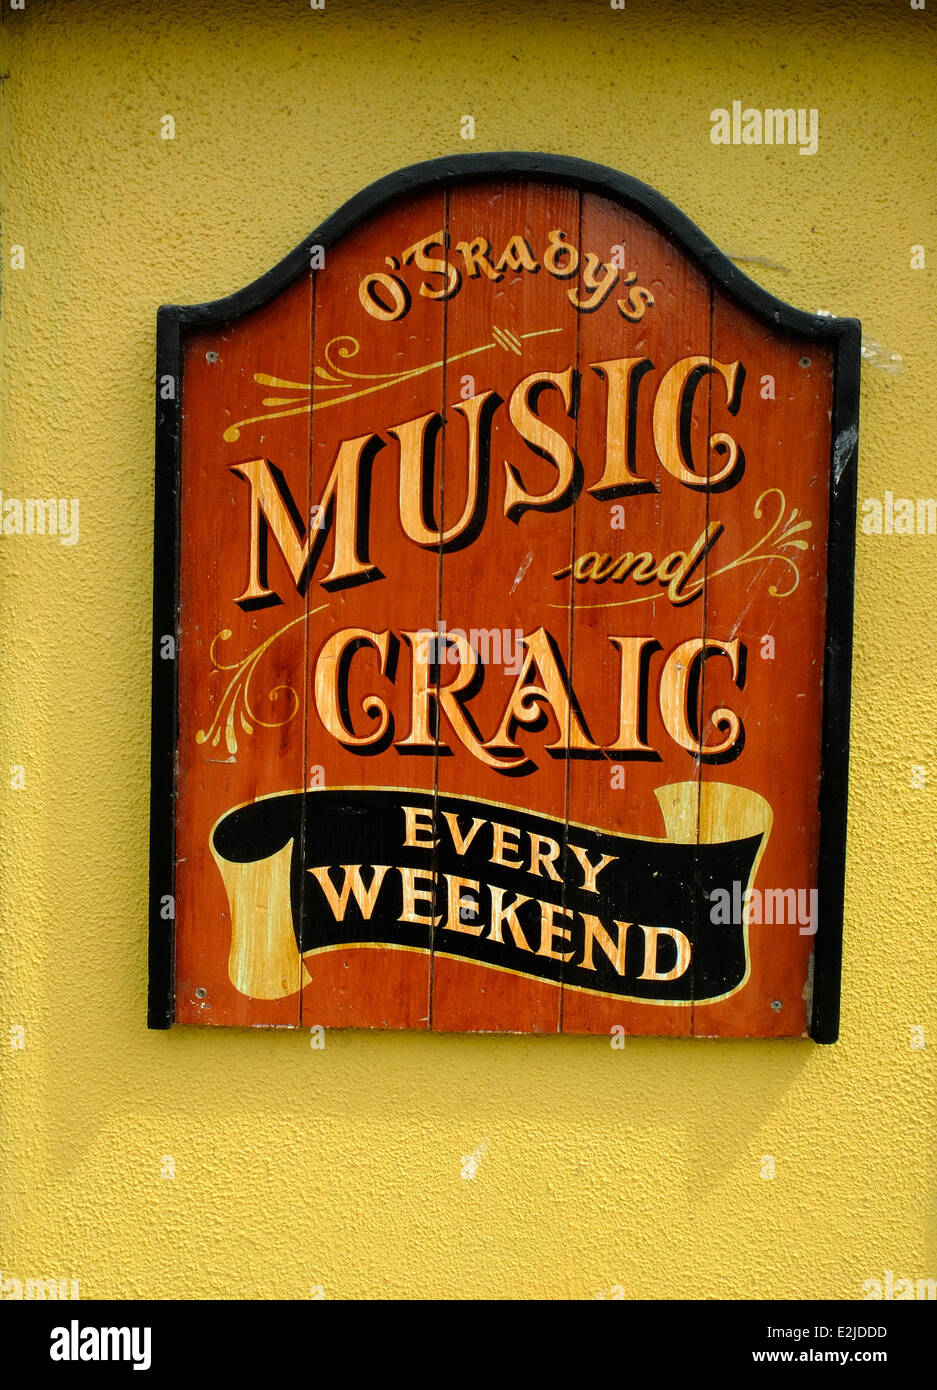 Irish pub sign - music and craic Stock Photo